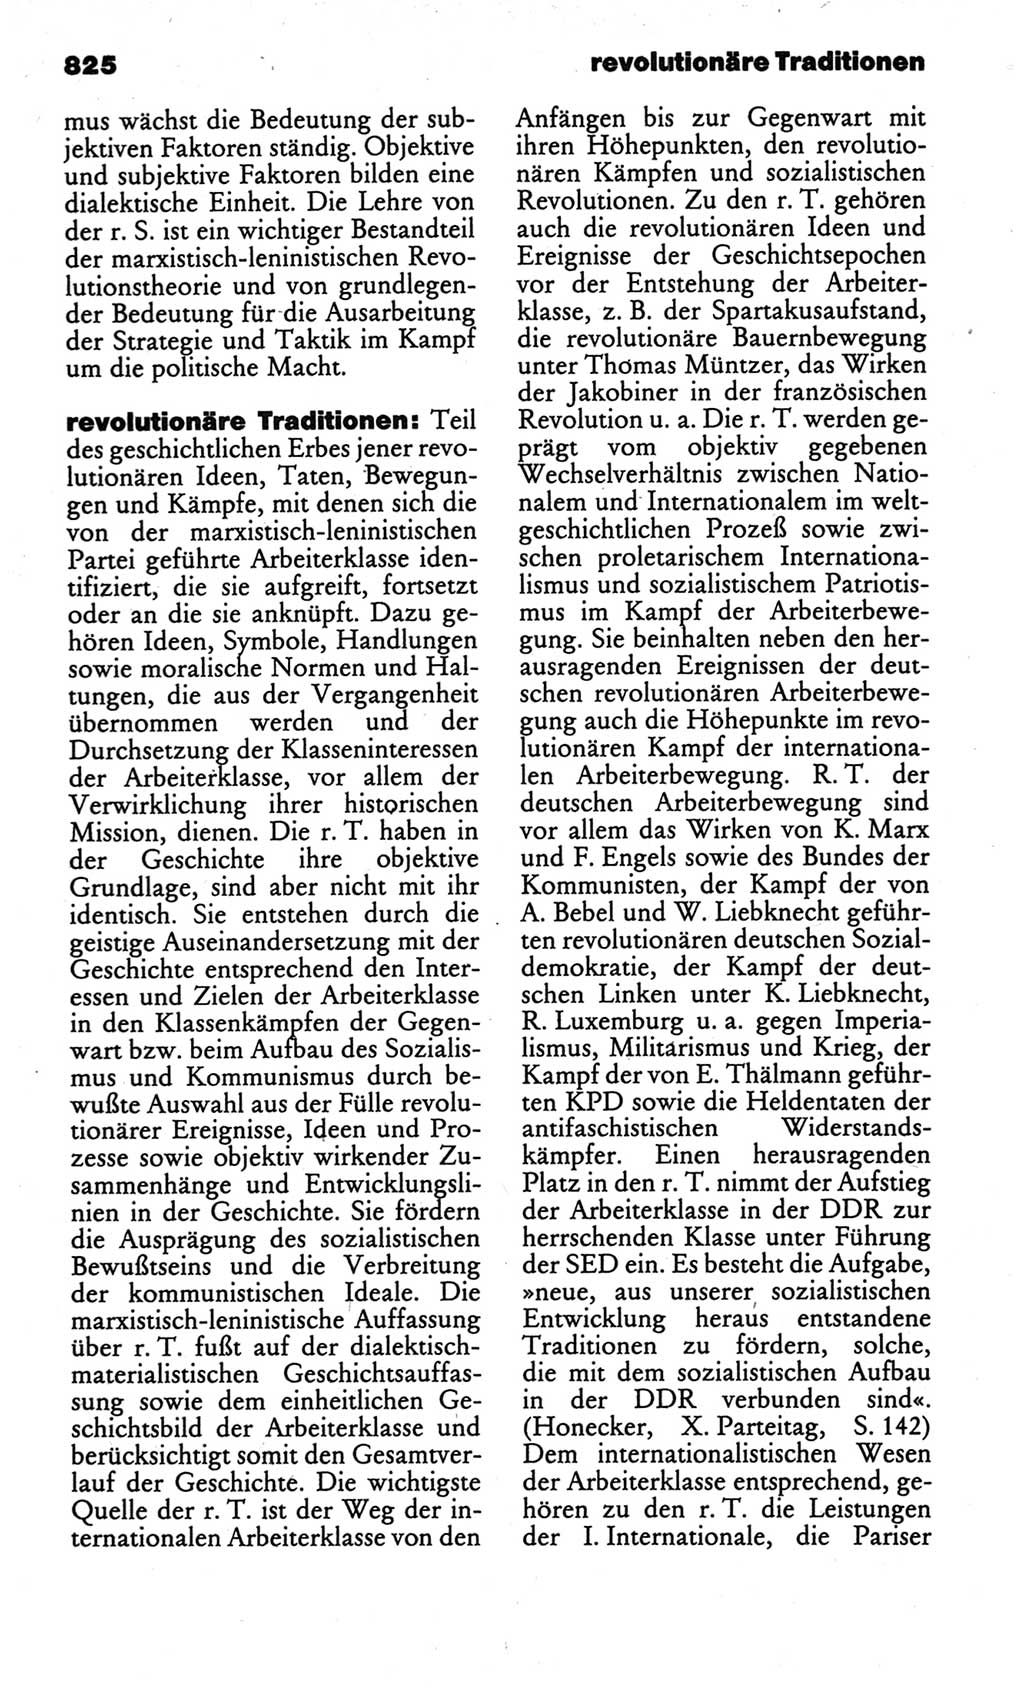 Kleines politisches Wörterbuch [Deutsche Demokratische Republik (DDR)] 1986, Seite 825 (Kl. pol. Wb. DDR 1986, S. 825)